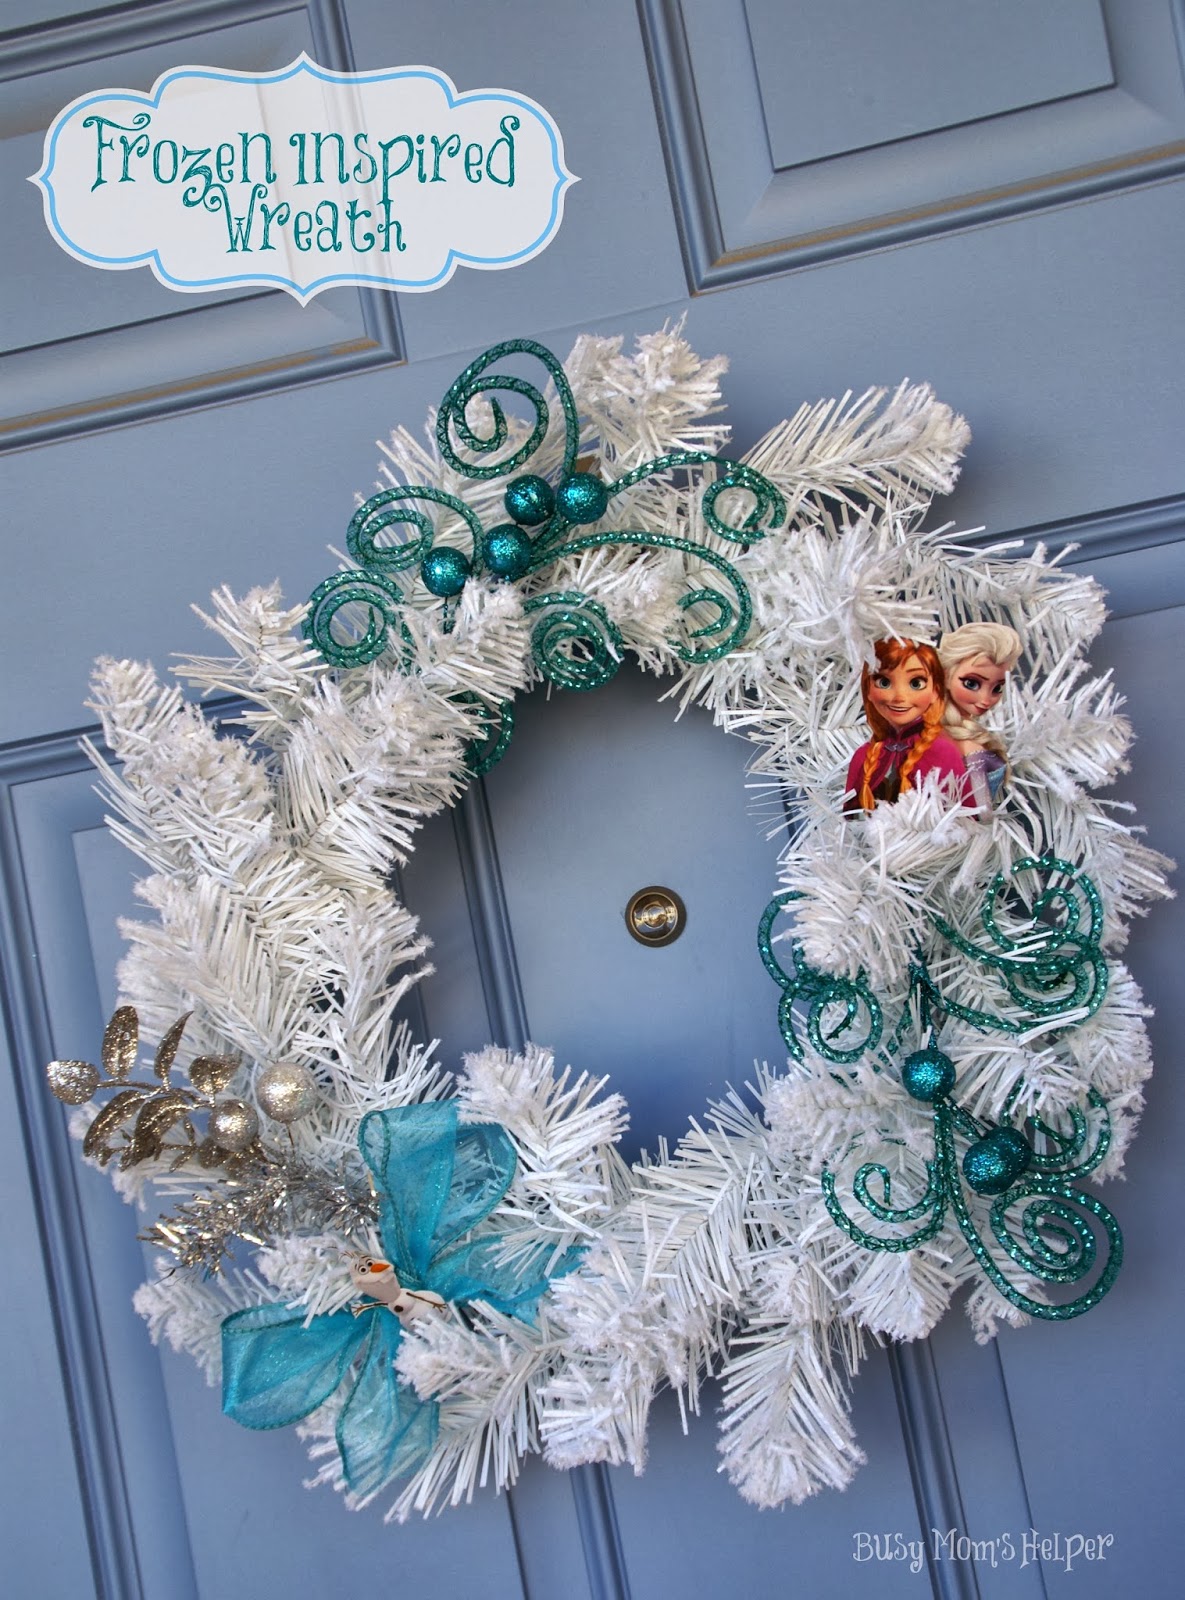 Frozen Inspired Wreath / by www.BusyMomsHelper.com #Frozen #Craft #Wreath #Disney